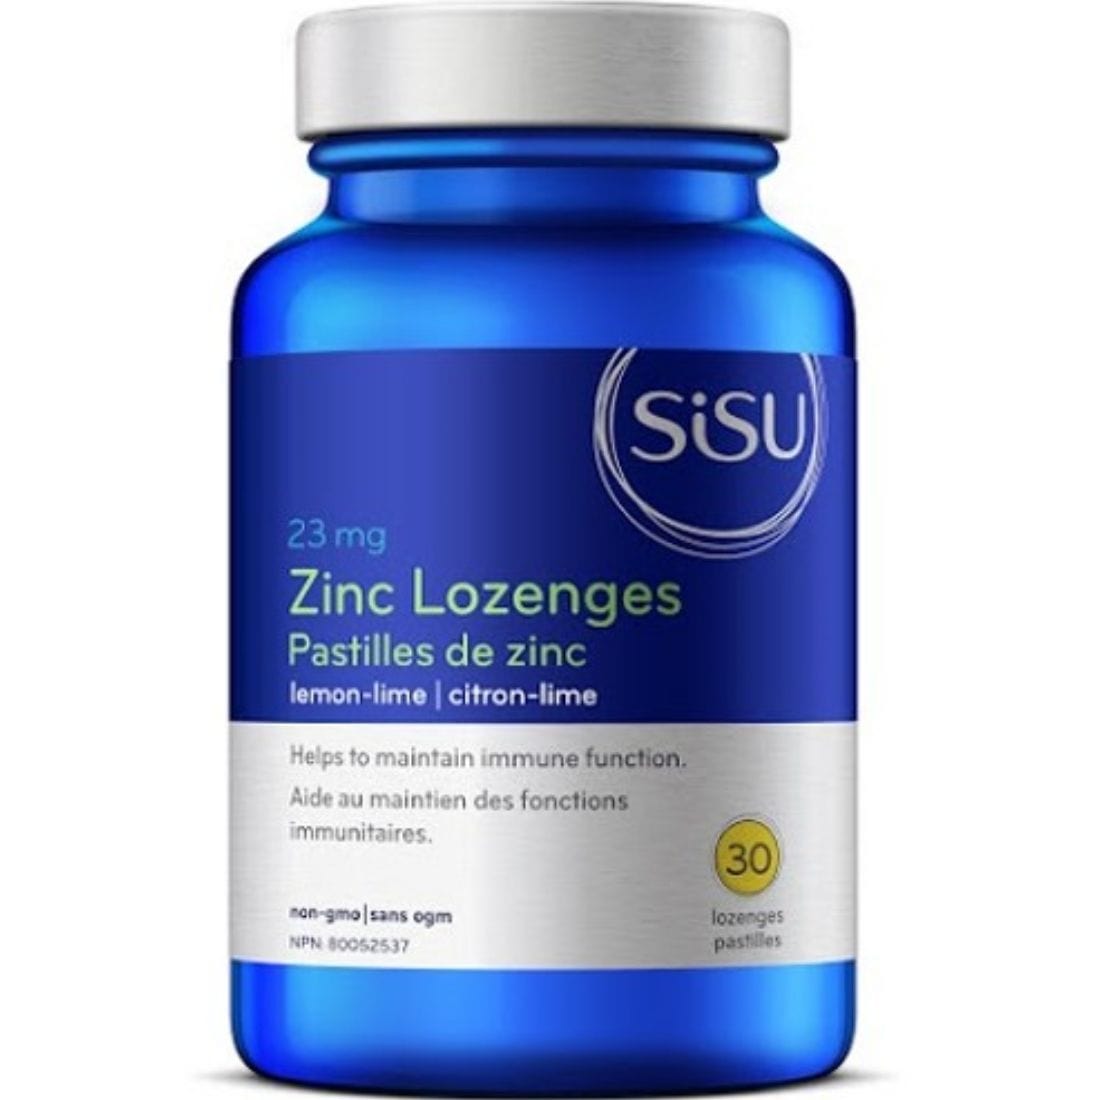 SISU Zinc Lozenges 23mg, Lemon Lime Flavour, 30 Chewable Lozenges